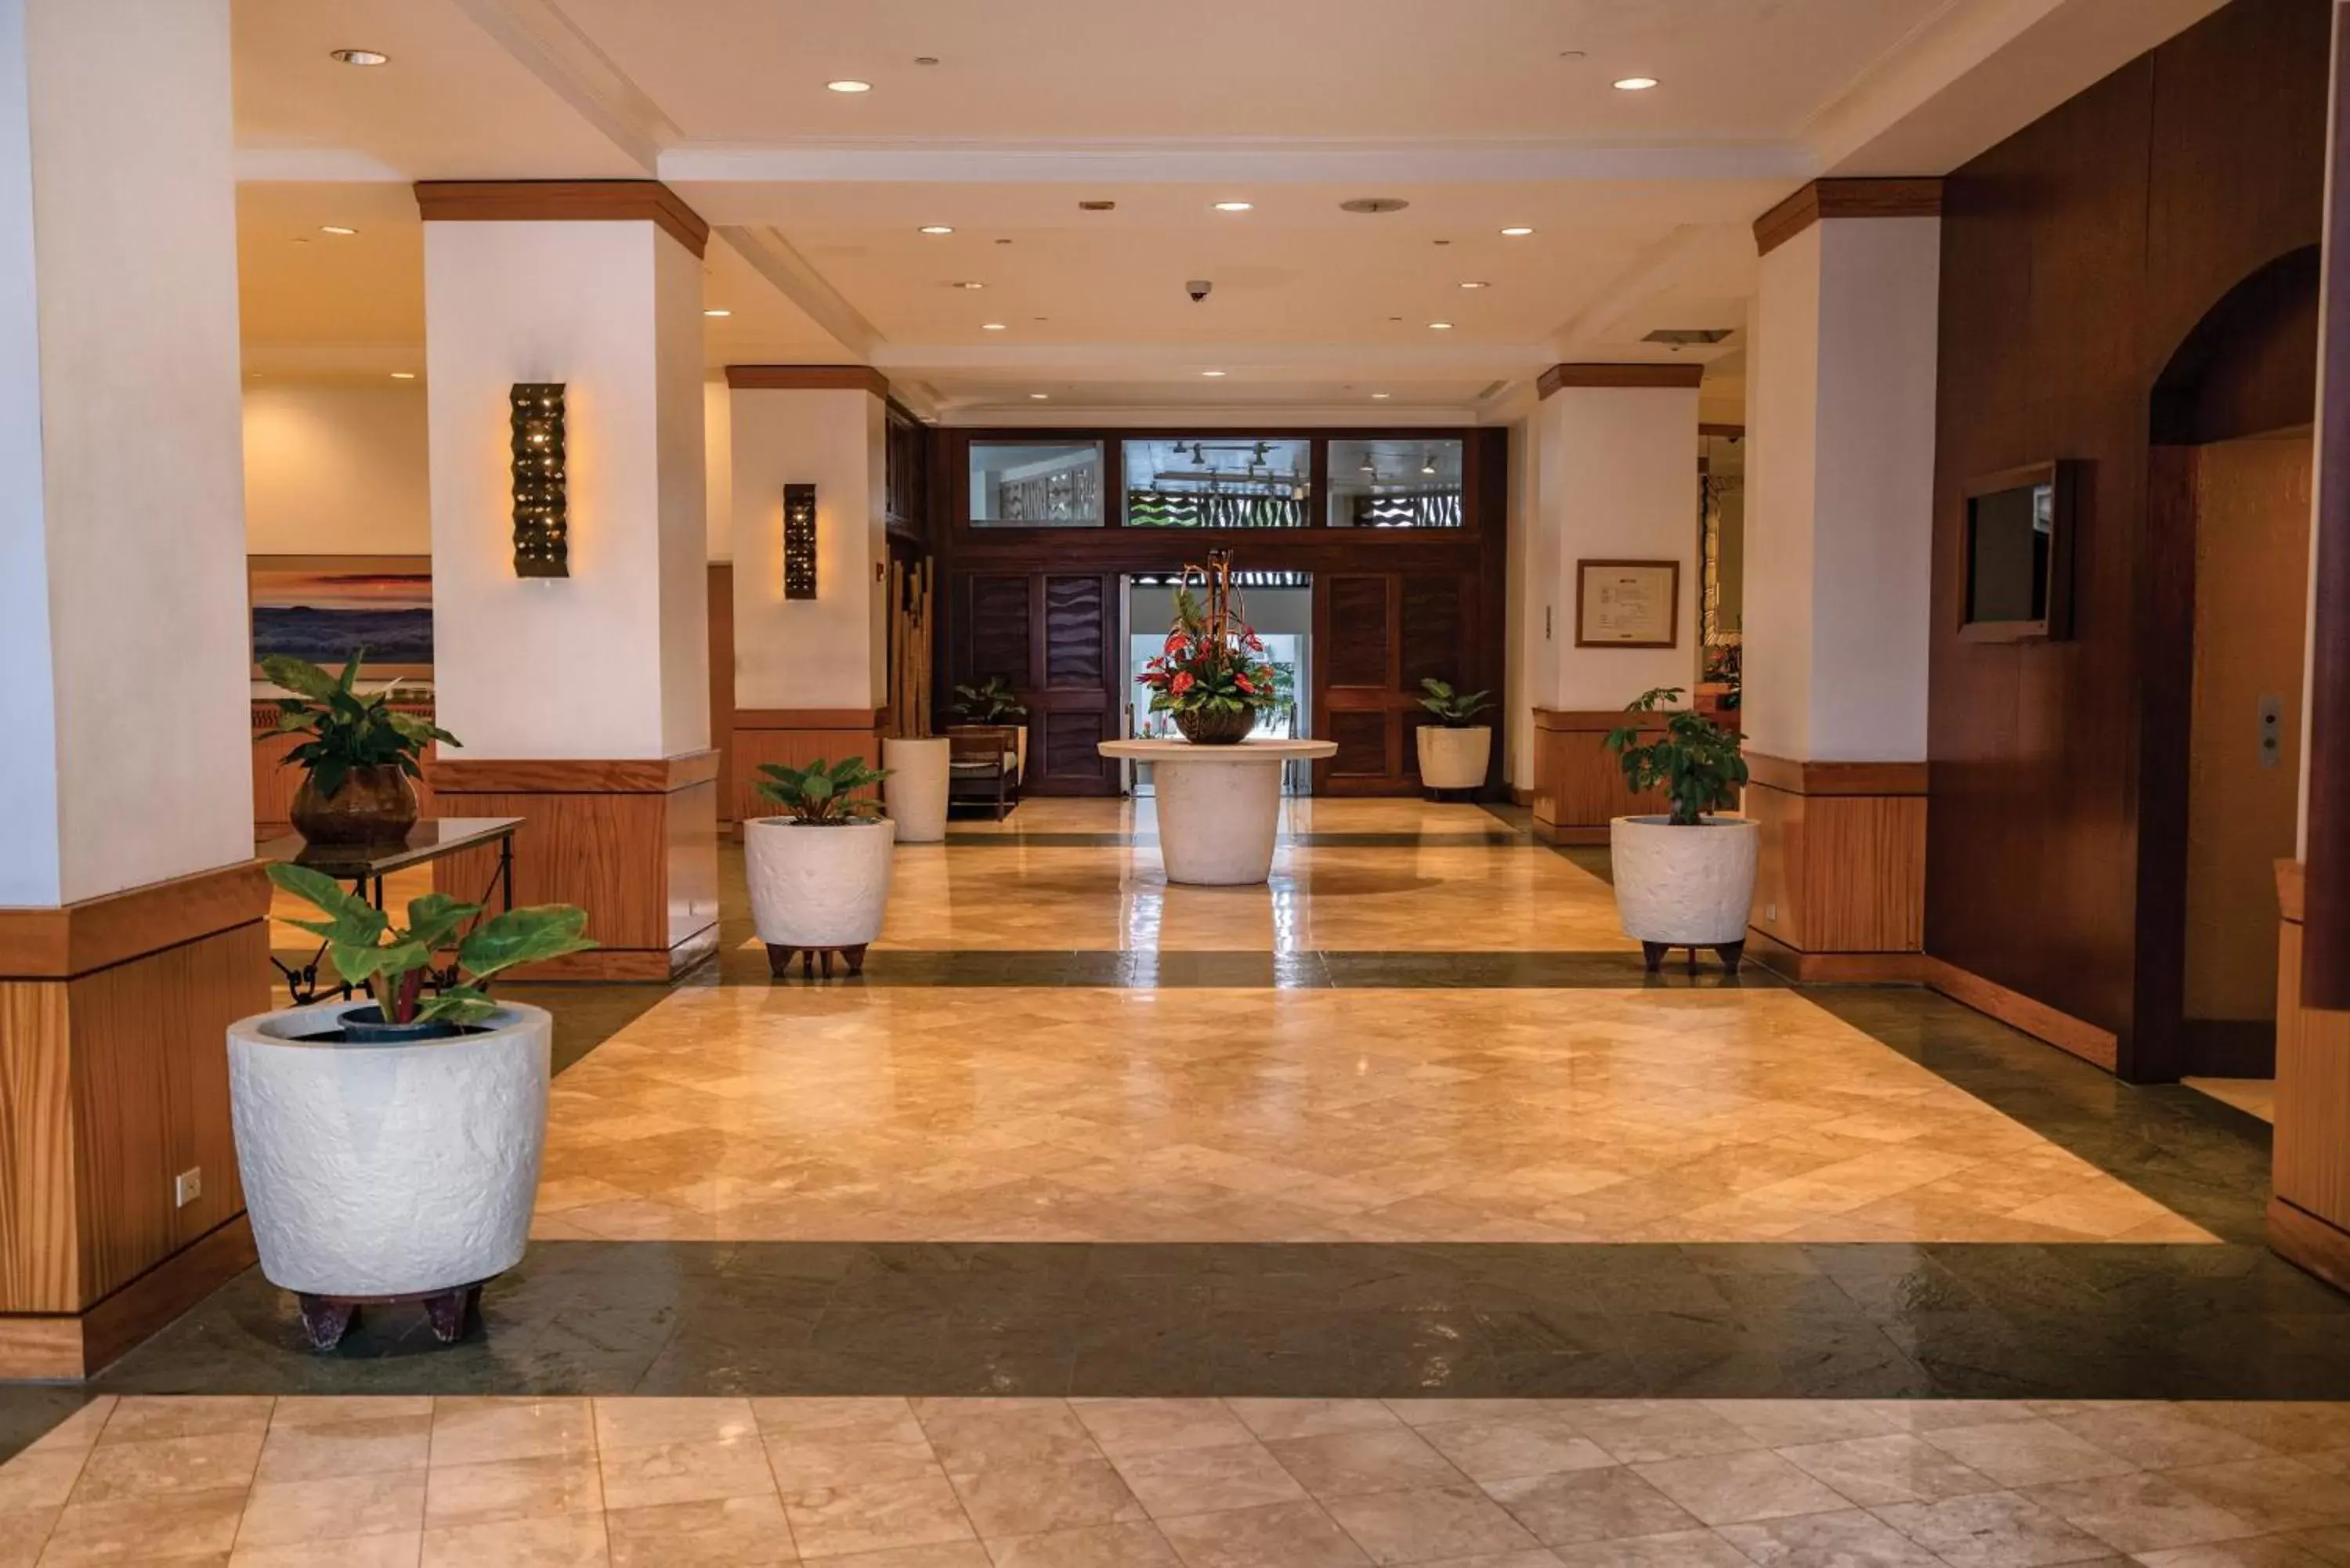 Lobby or reception, Lobby/Reception in Waikiki Marina Resort at the Ilikai